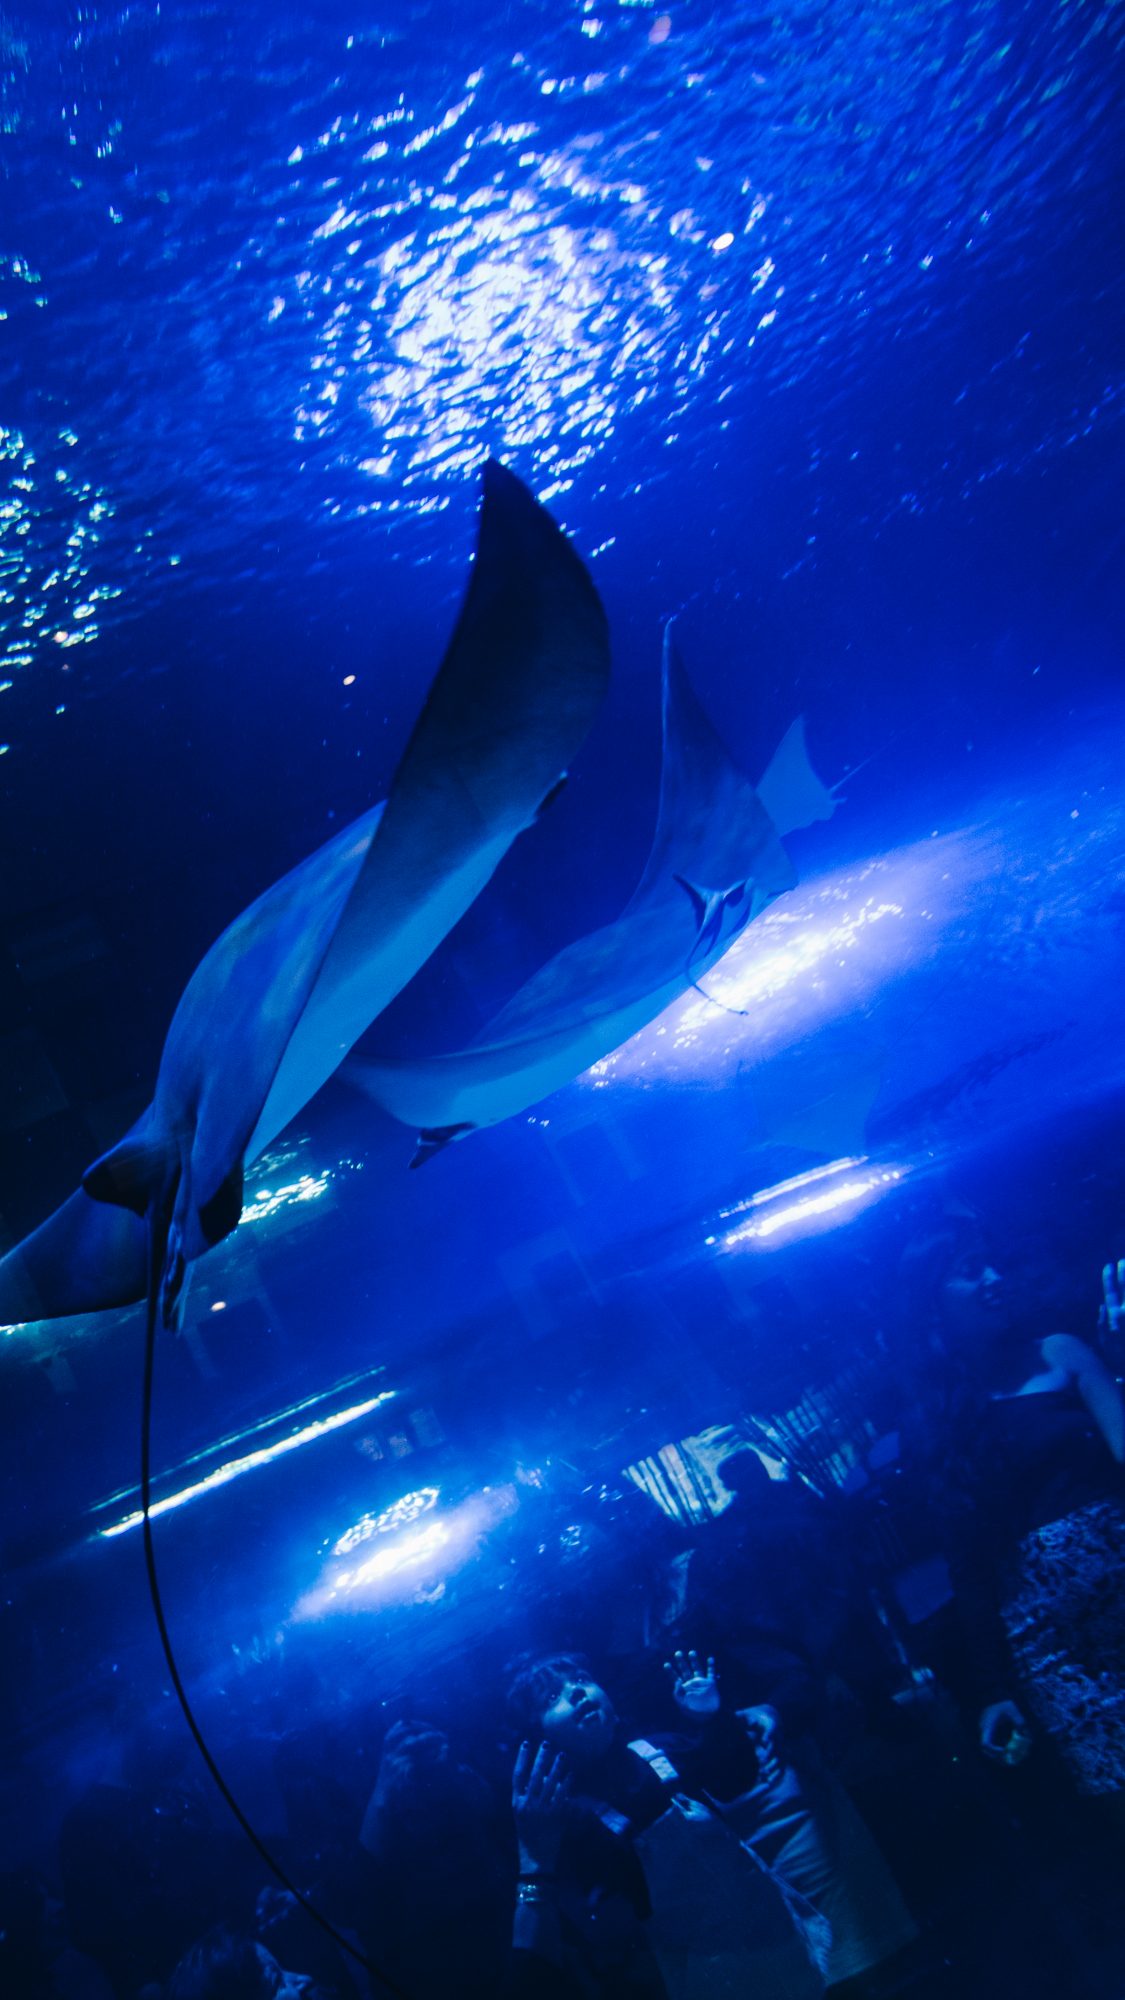 Raies Mentas en contre-plongée - Aquarium du Dubaï Mall